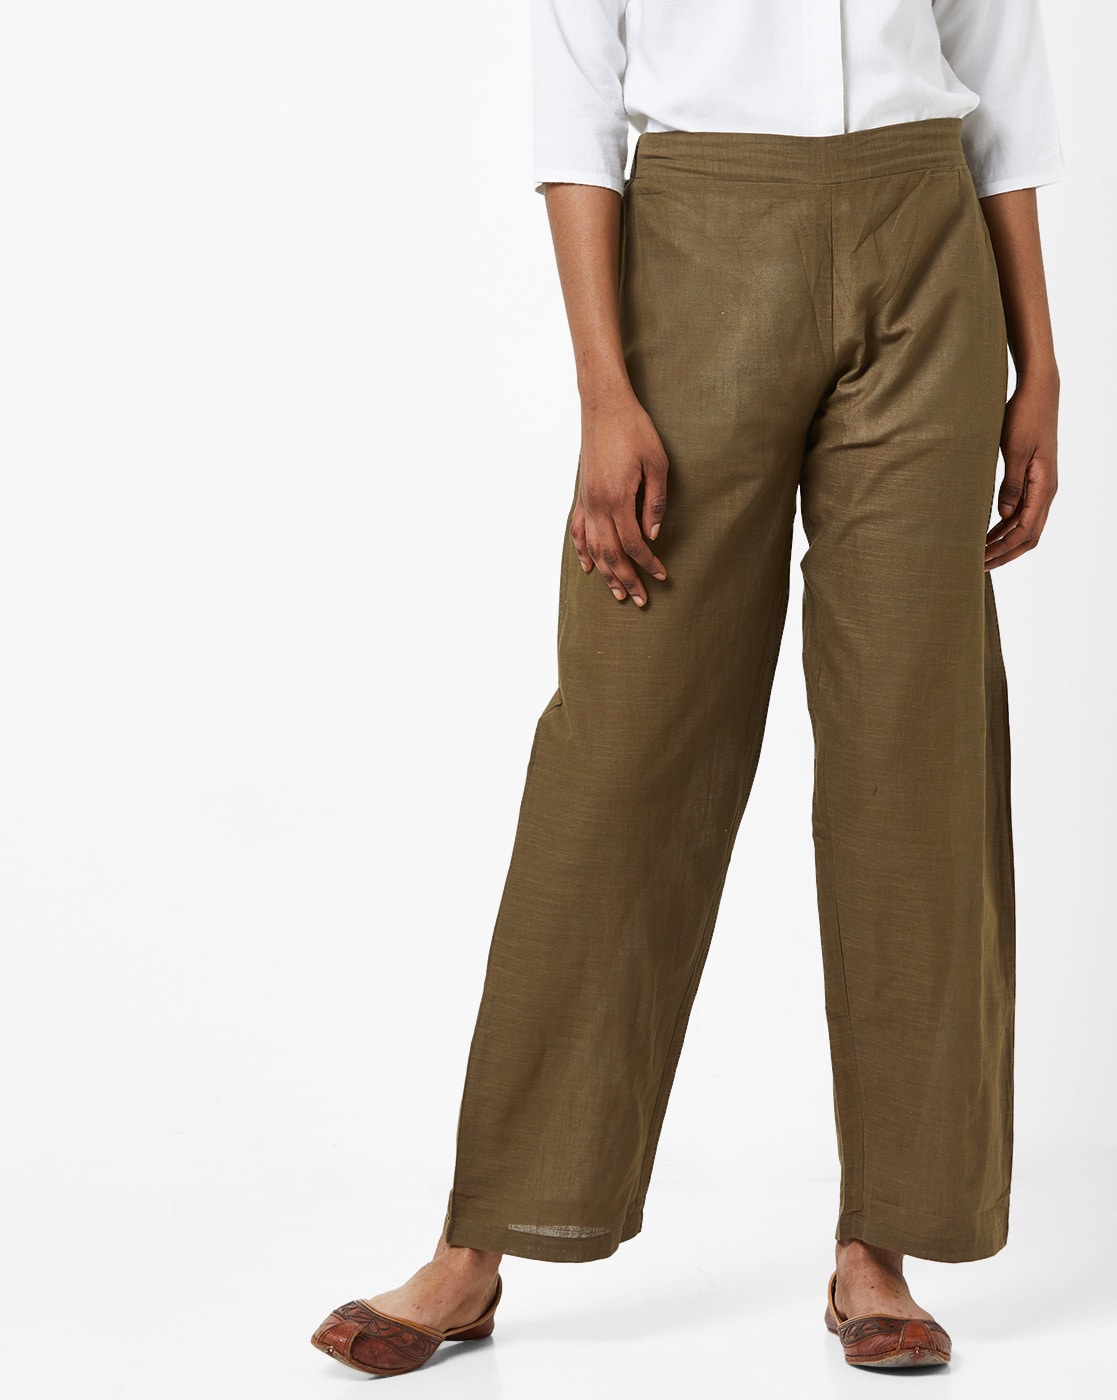 Buy Mustard Pants for Women by Indie Picks Online  Ajiocom